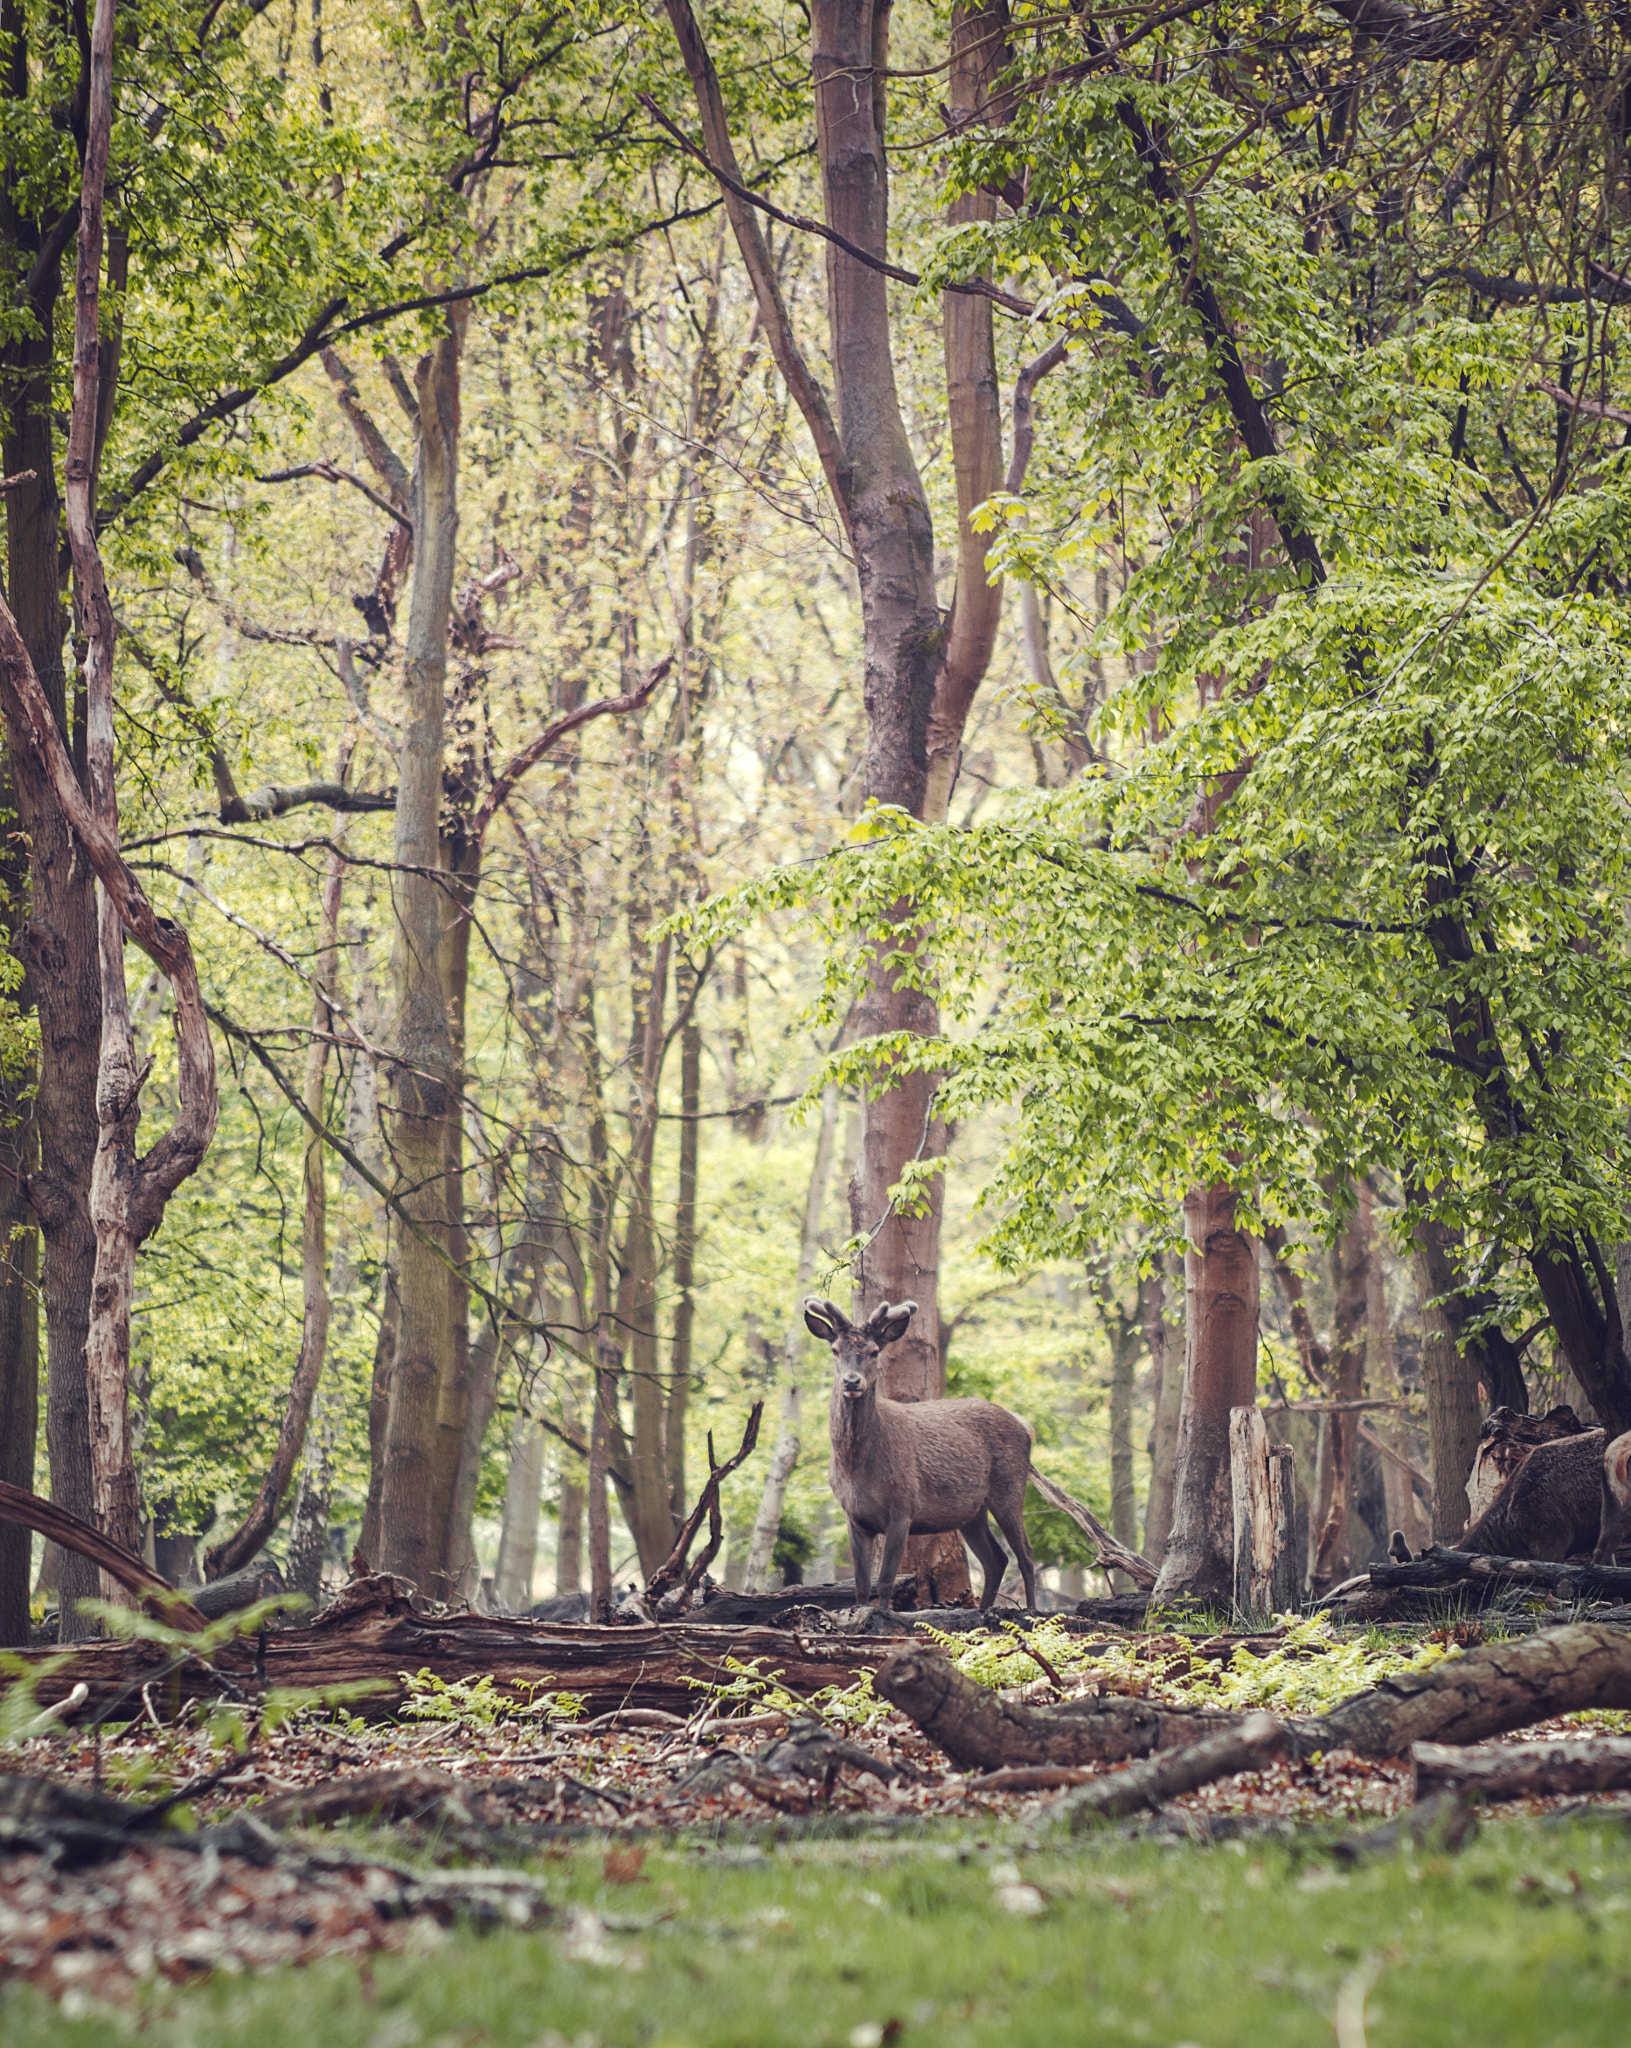 AF Nikkor 70-210mm f/4-5.6D sample photo. Deer at the forest photography